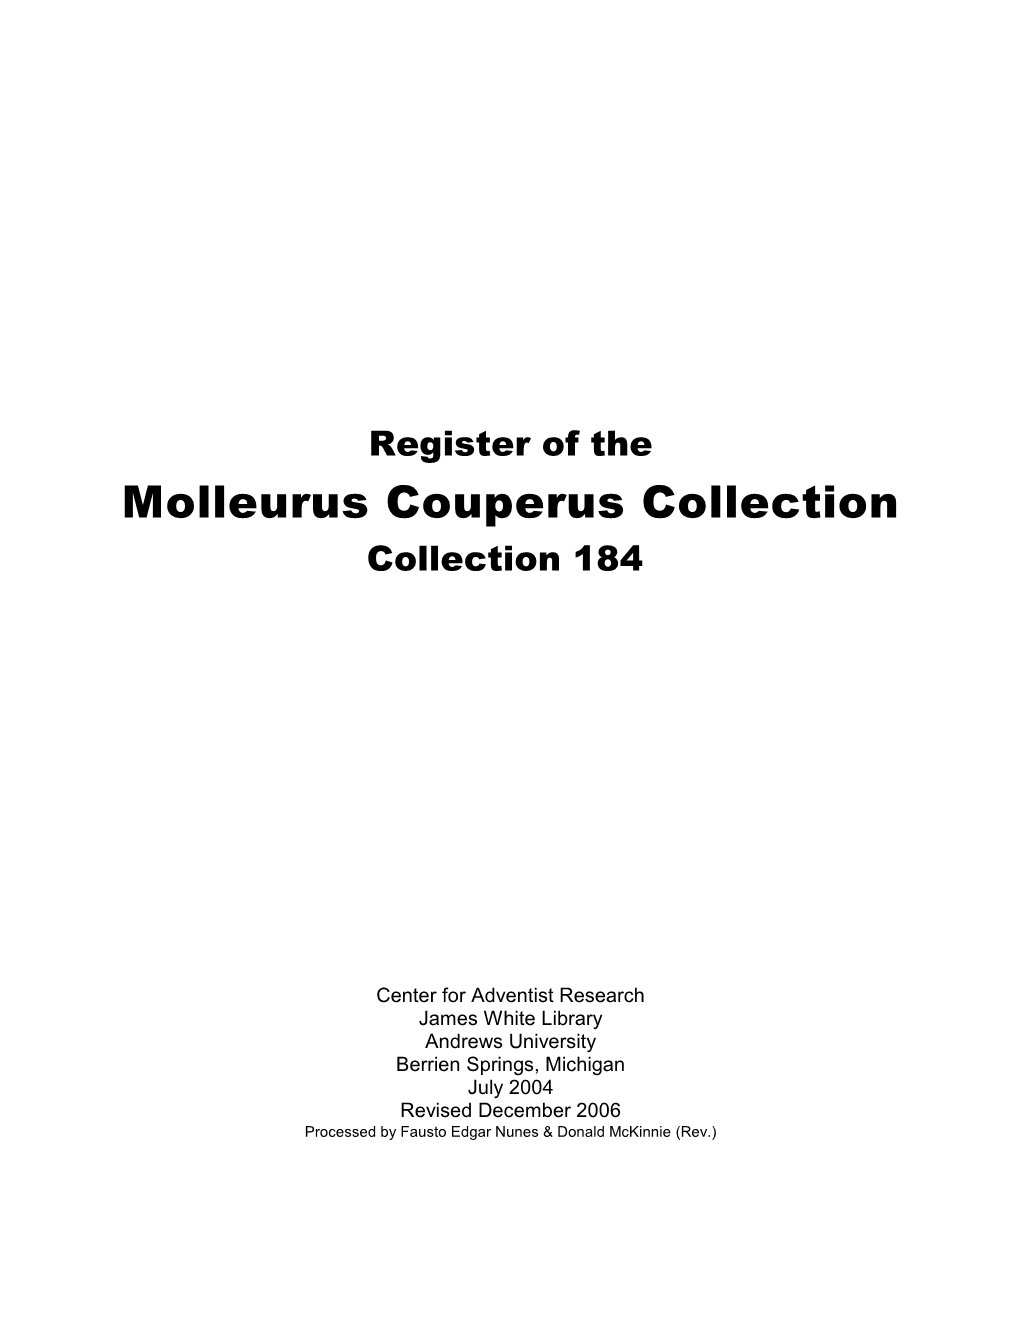 Molleurus Couperus Collection Collection 184